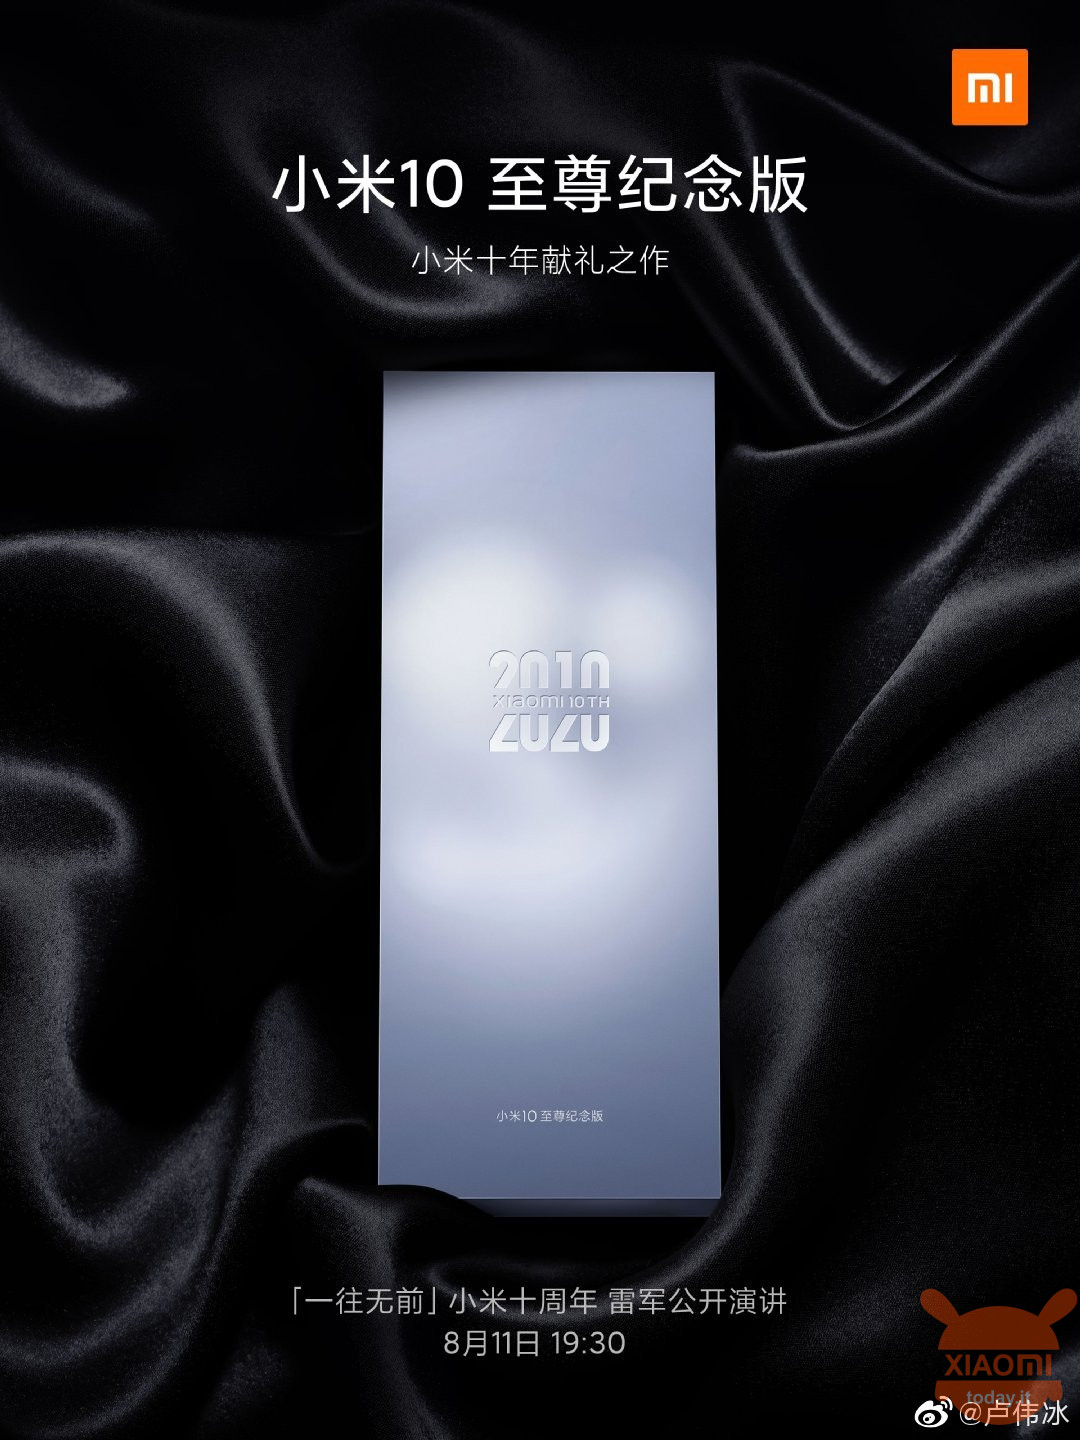 Xiaomi Mi 10 Extreme Commemorative Edition